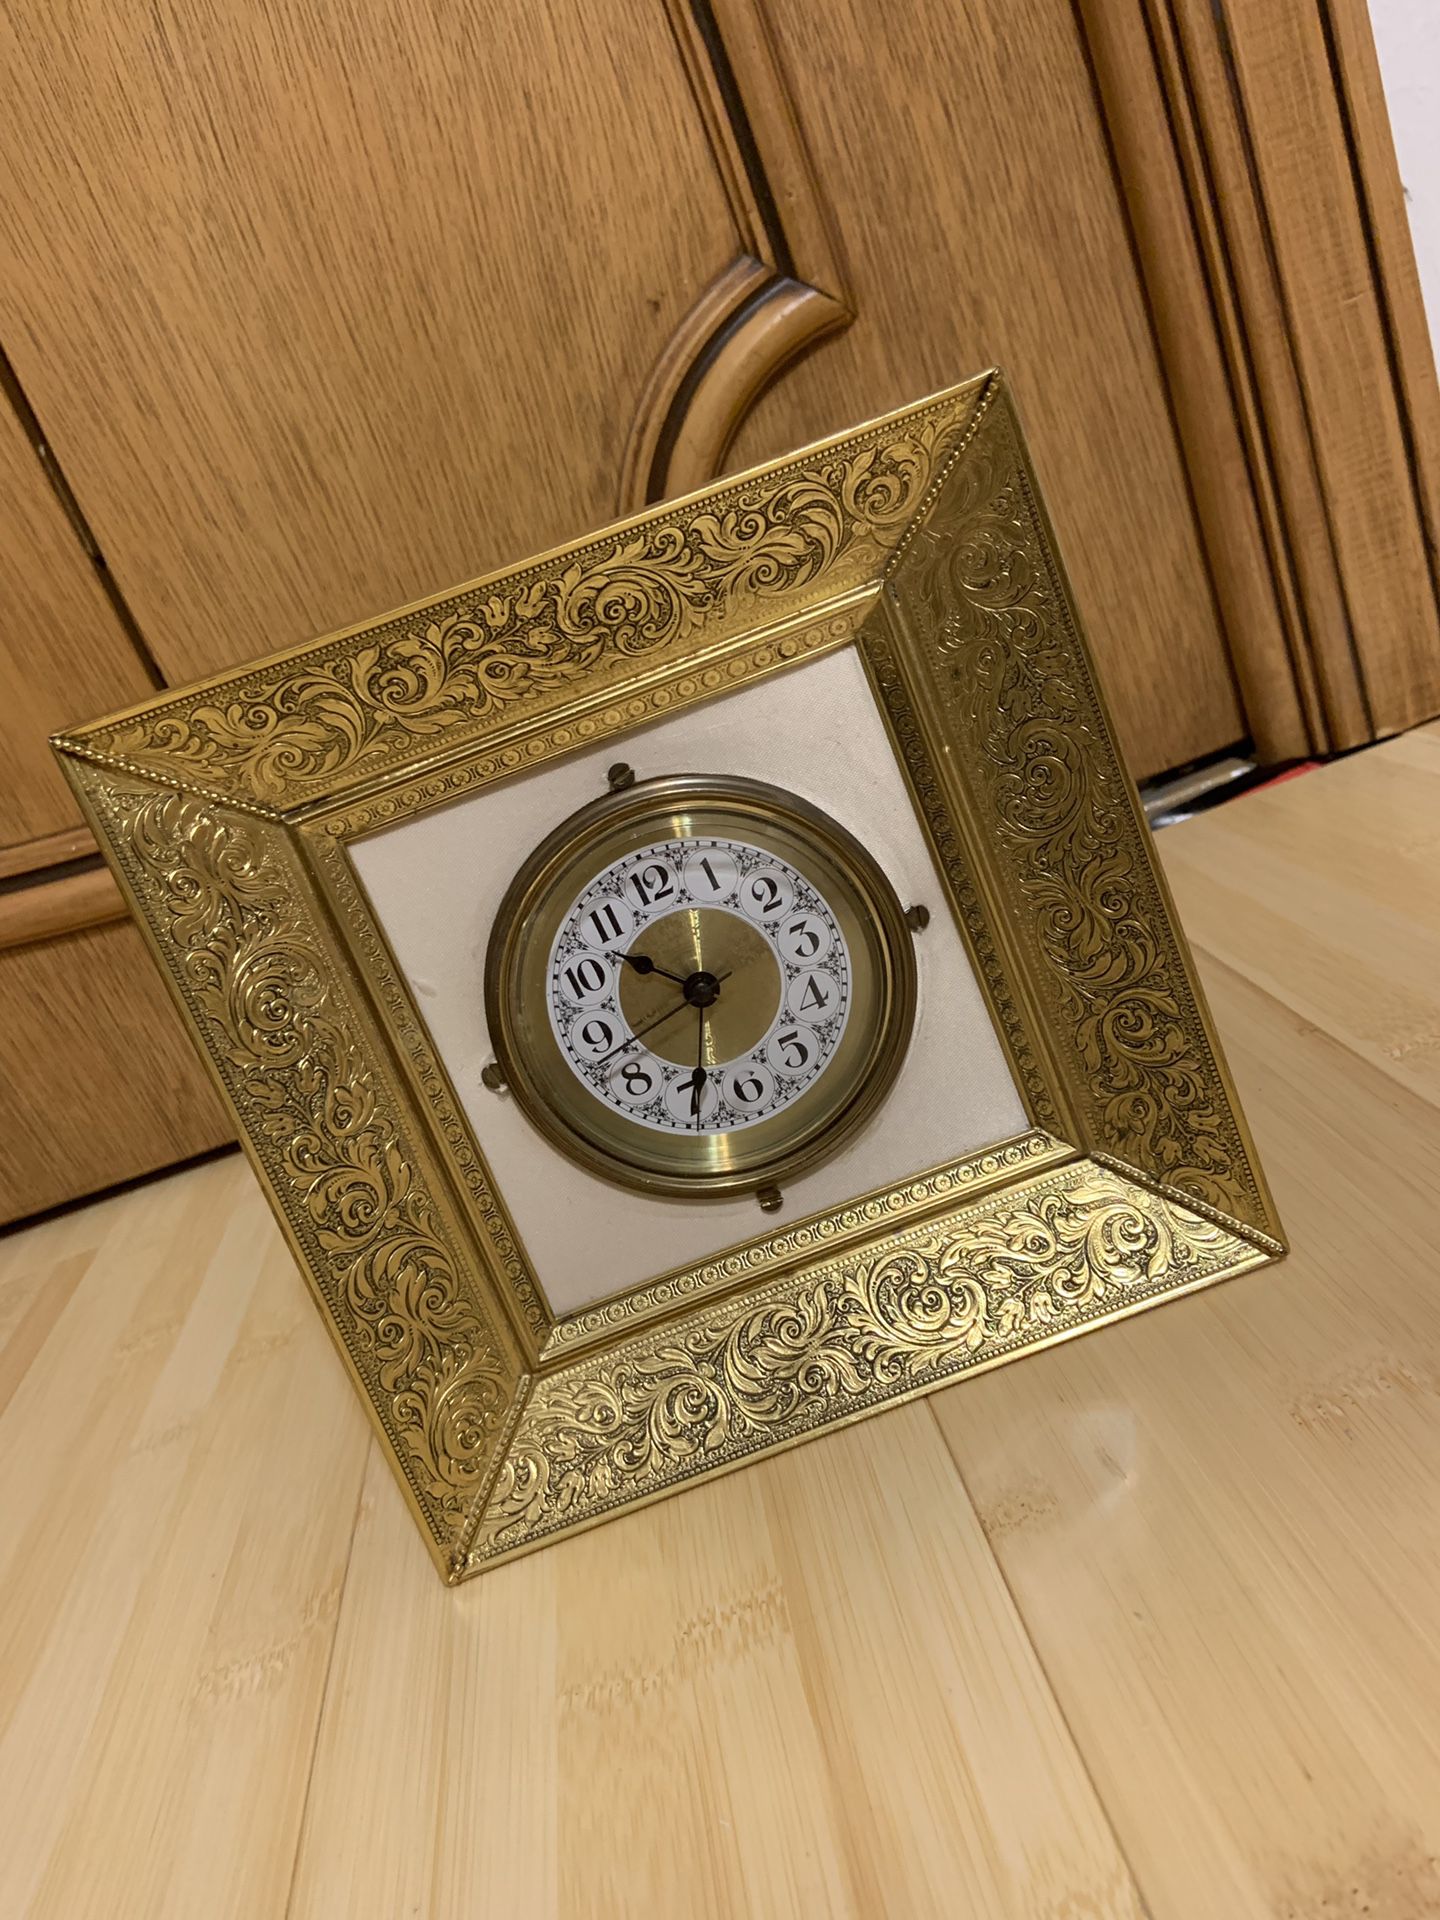 Antique Clock with alarm